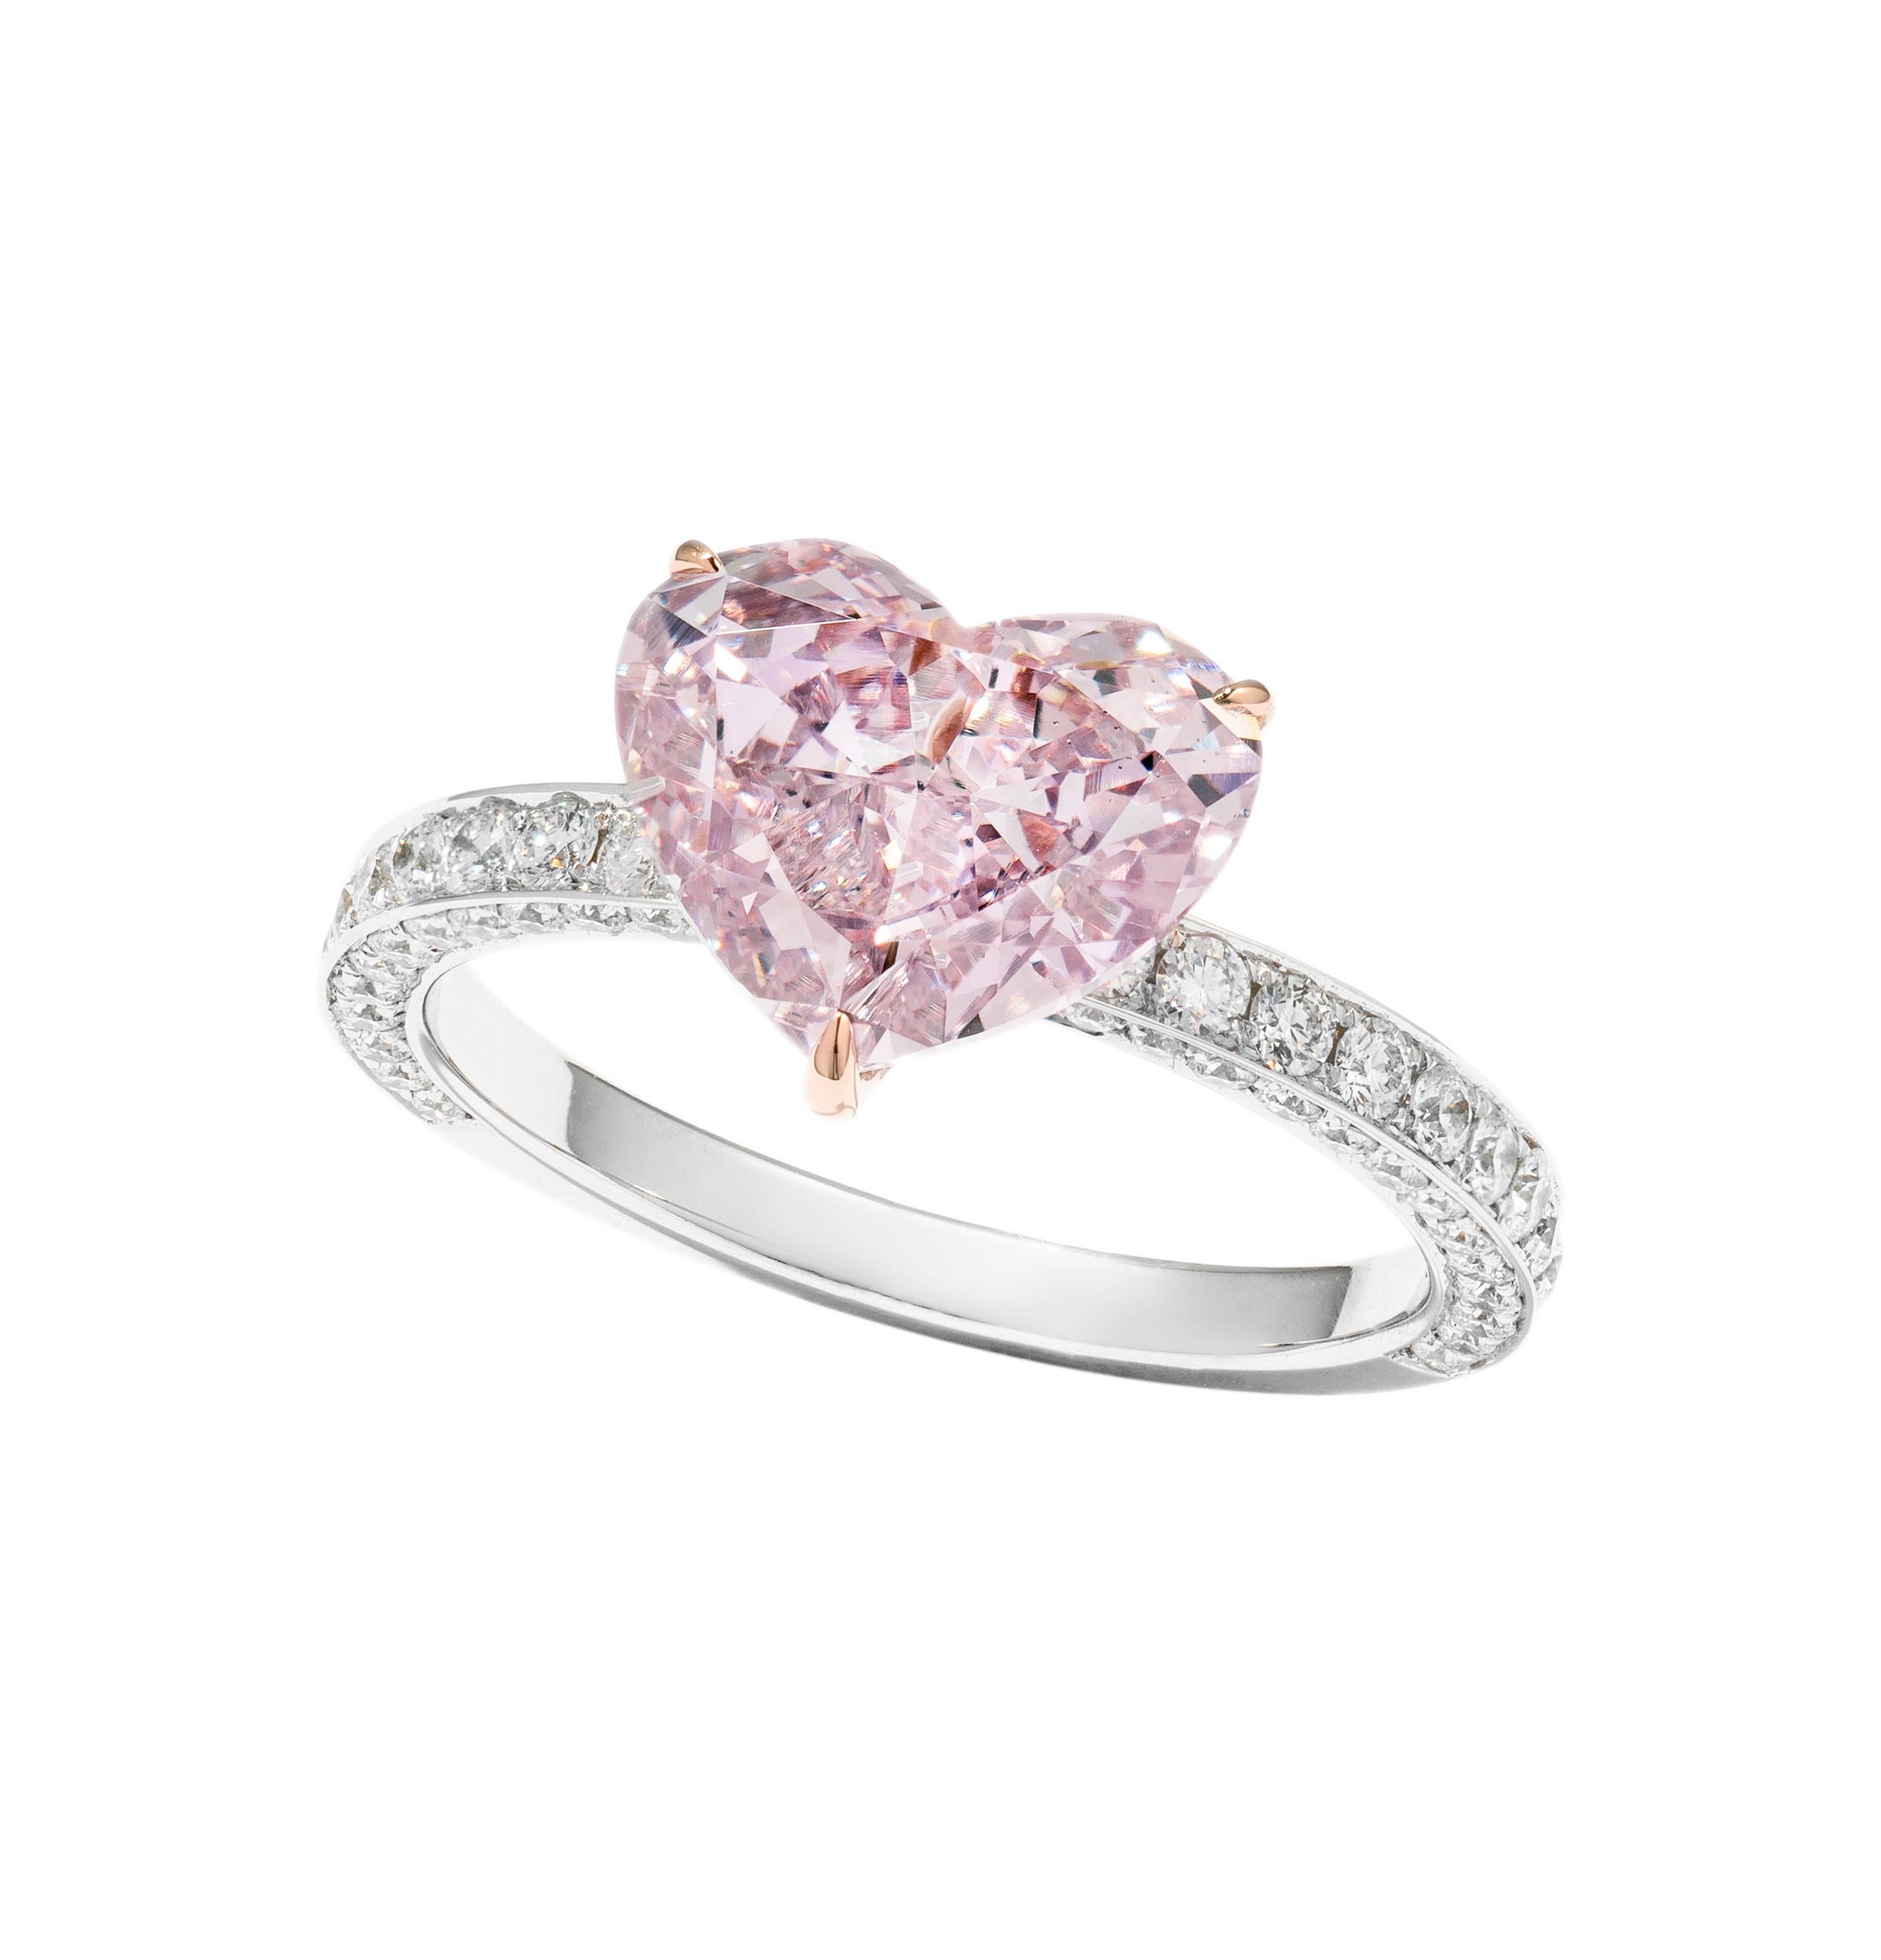 Dieses Stück ist nur auf Bestellung erhältlich. 

Süßer, romantischer Ring in Herzform mit einem 2,53 Karat Fancy Pink Purple Diamond (GIA-Zertifikat #5141346599). Vihari Jewels hat dieses Sammlerstück für die feminine Frau geschaffen. Der Ring ist